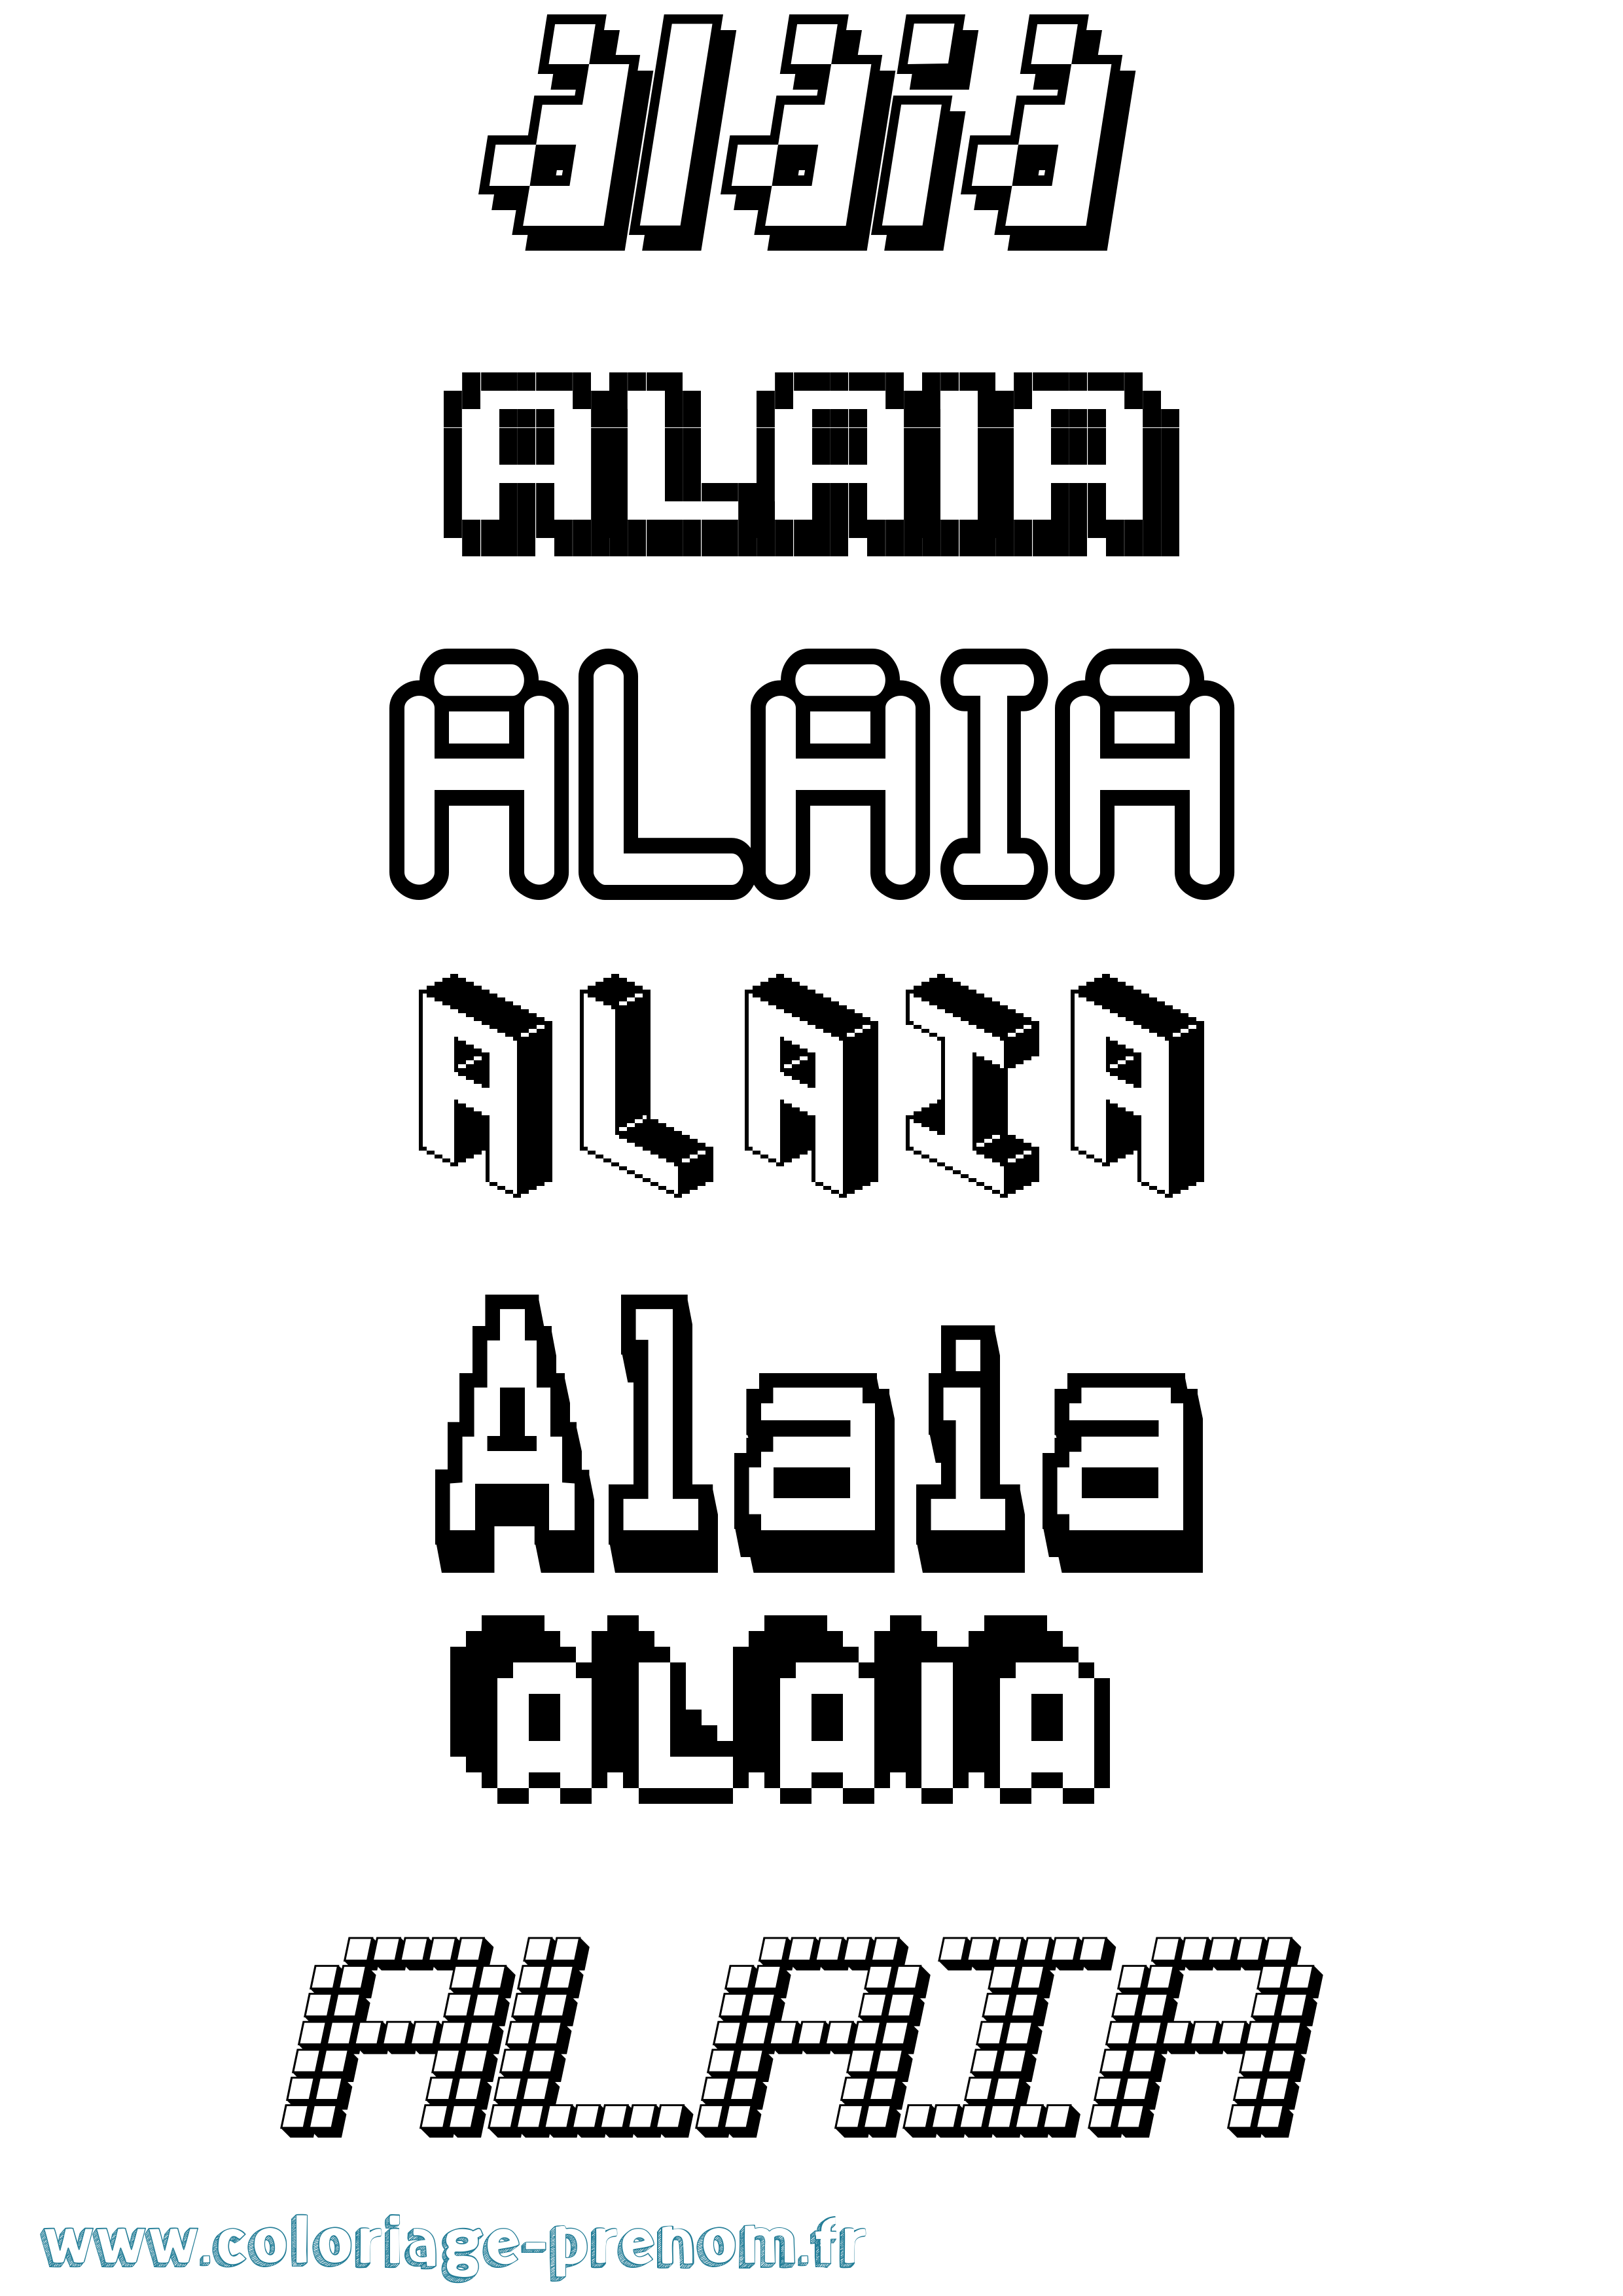 Coloriage prénom Alaia Pixel